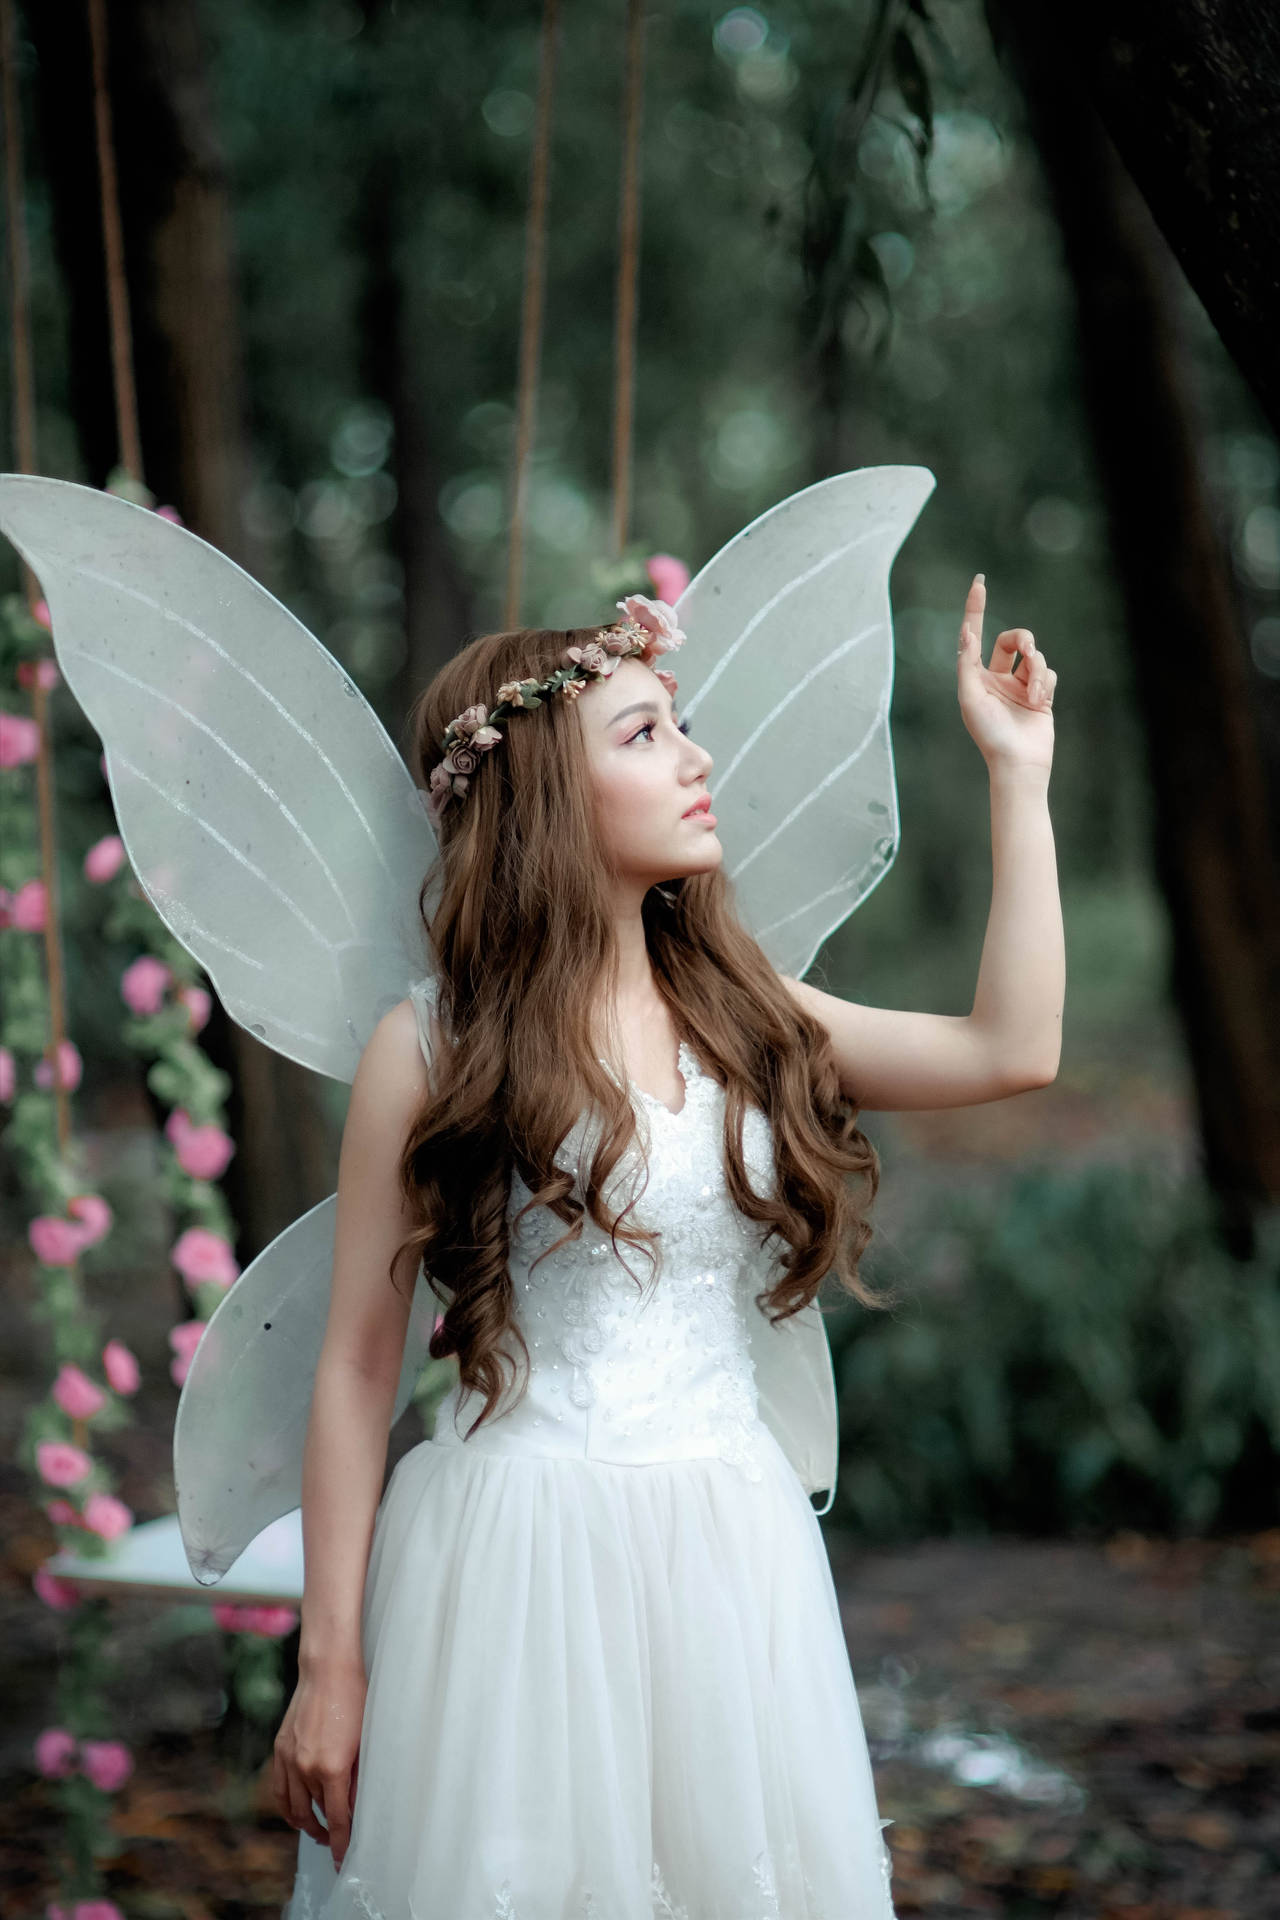 Cute Girl In Fairy Costume